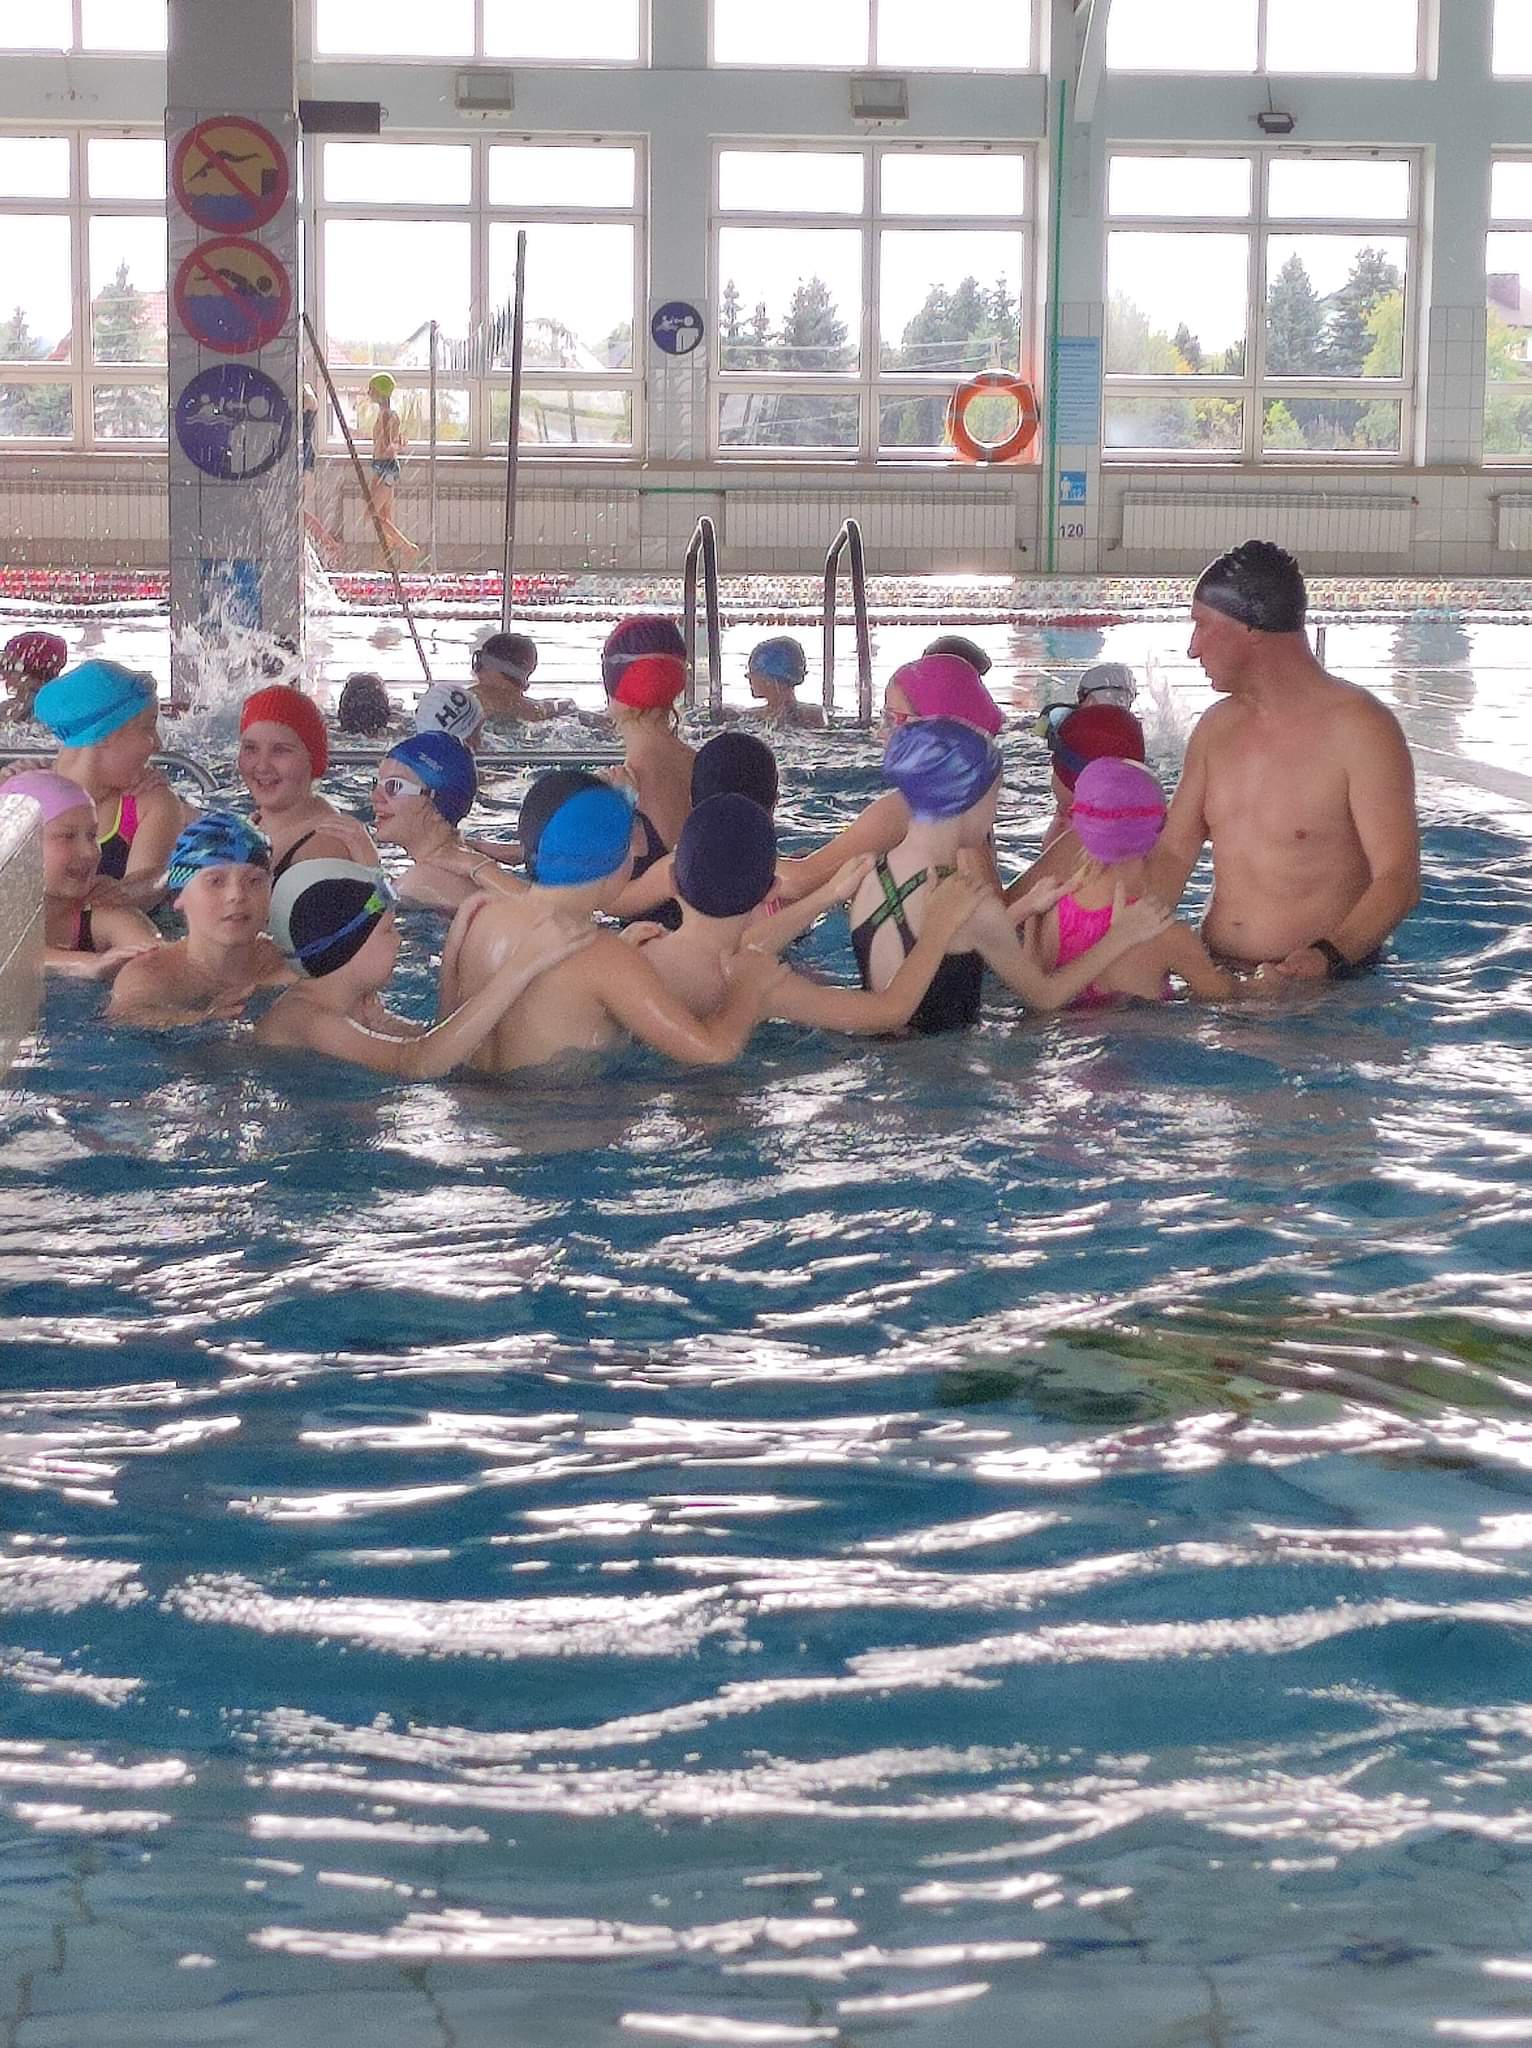 zdjęcie przedstawia grupkę dzieci w wieku szkolnym wraz z instruktorem pływania